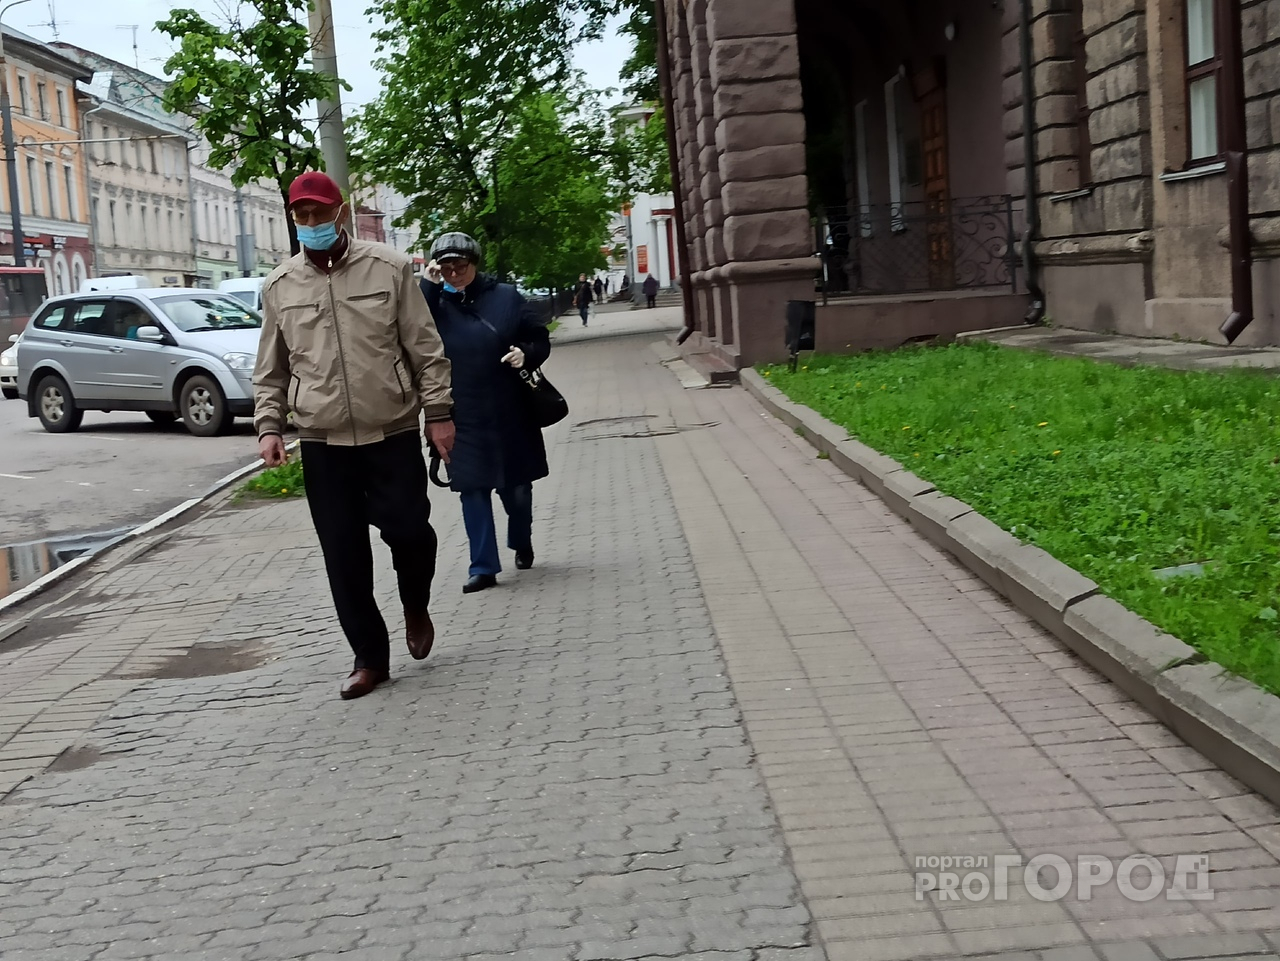 "Останавливают даже экспрессы": в Ярославле начались массовые рейды по соблюдению масочного режима